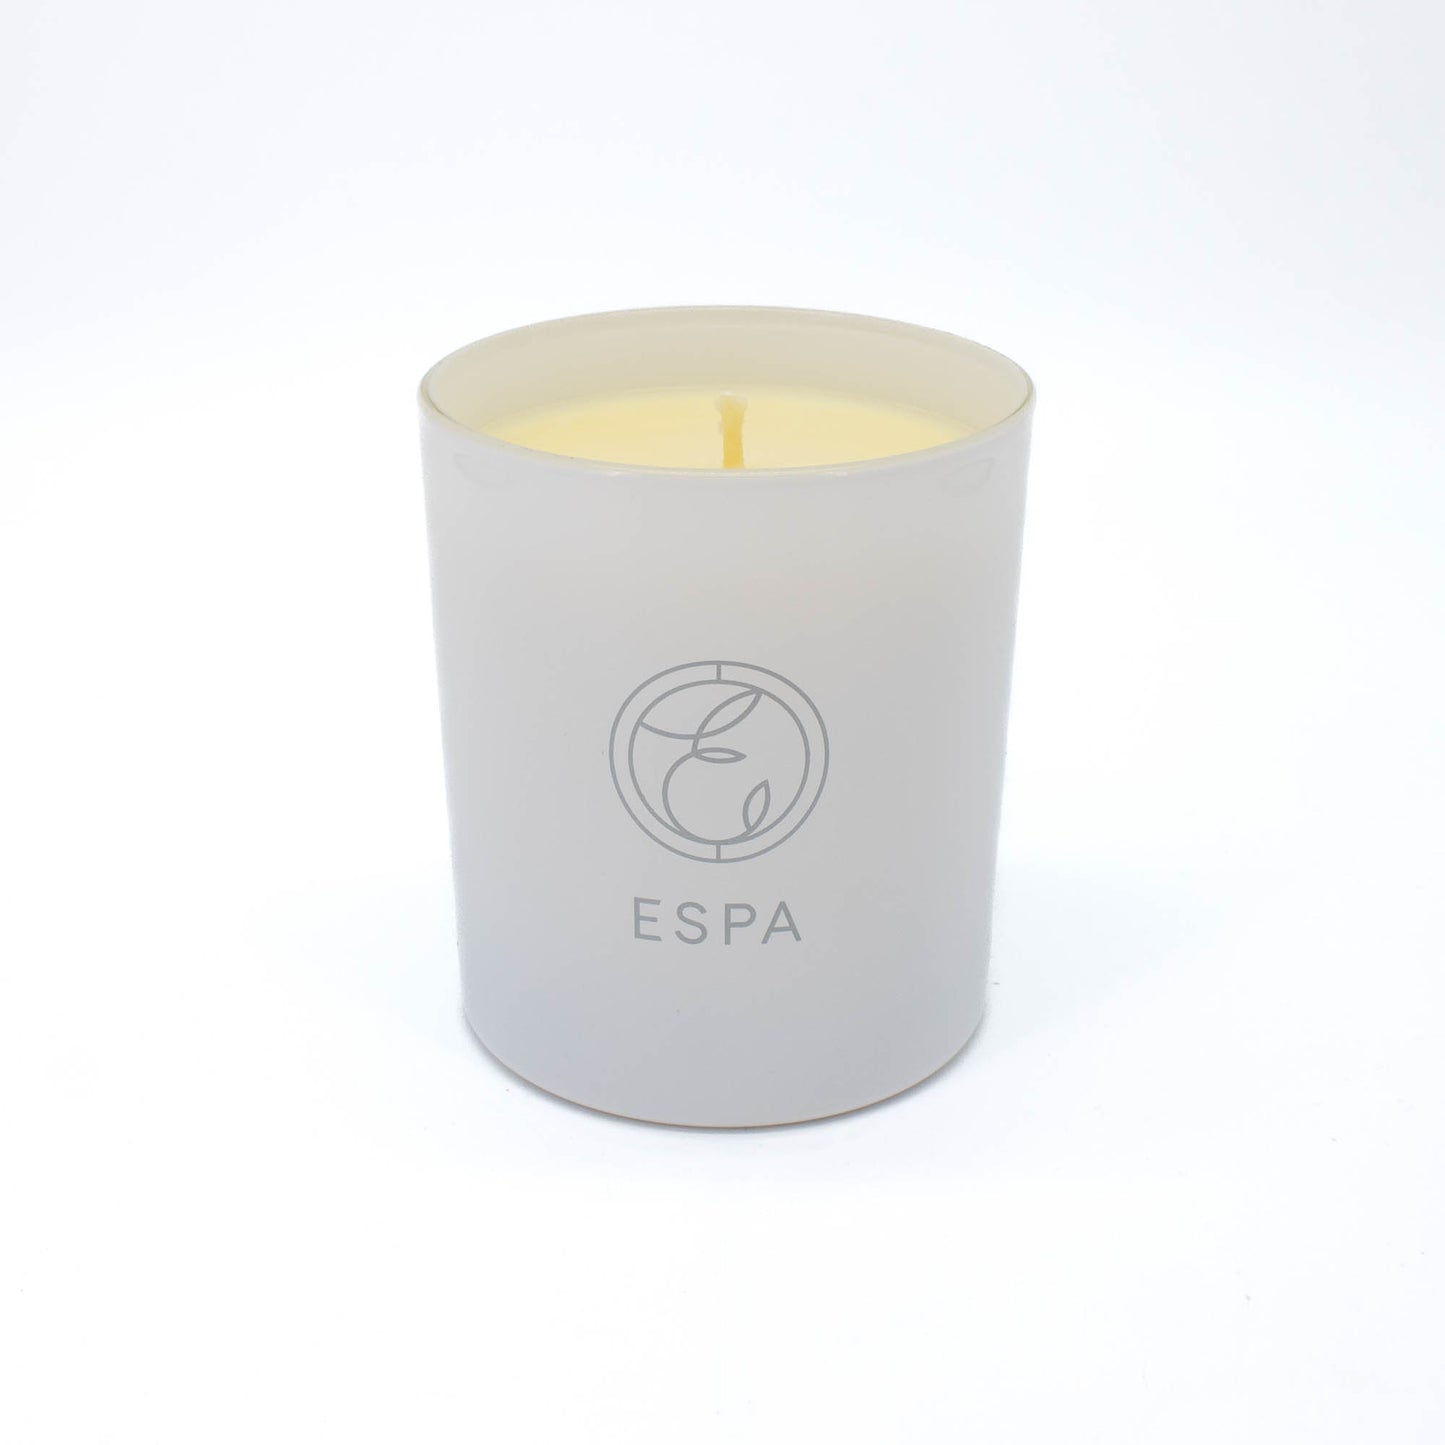 ESPA Energizing Aromatic Candle 7oz - Missing Box